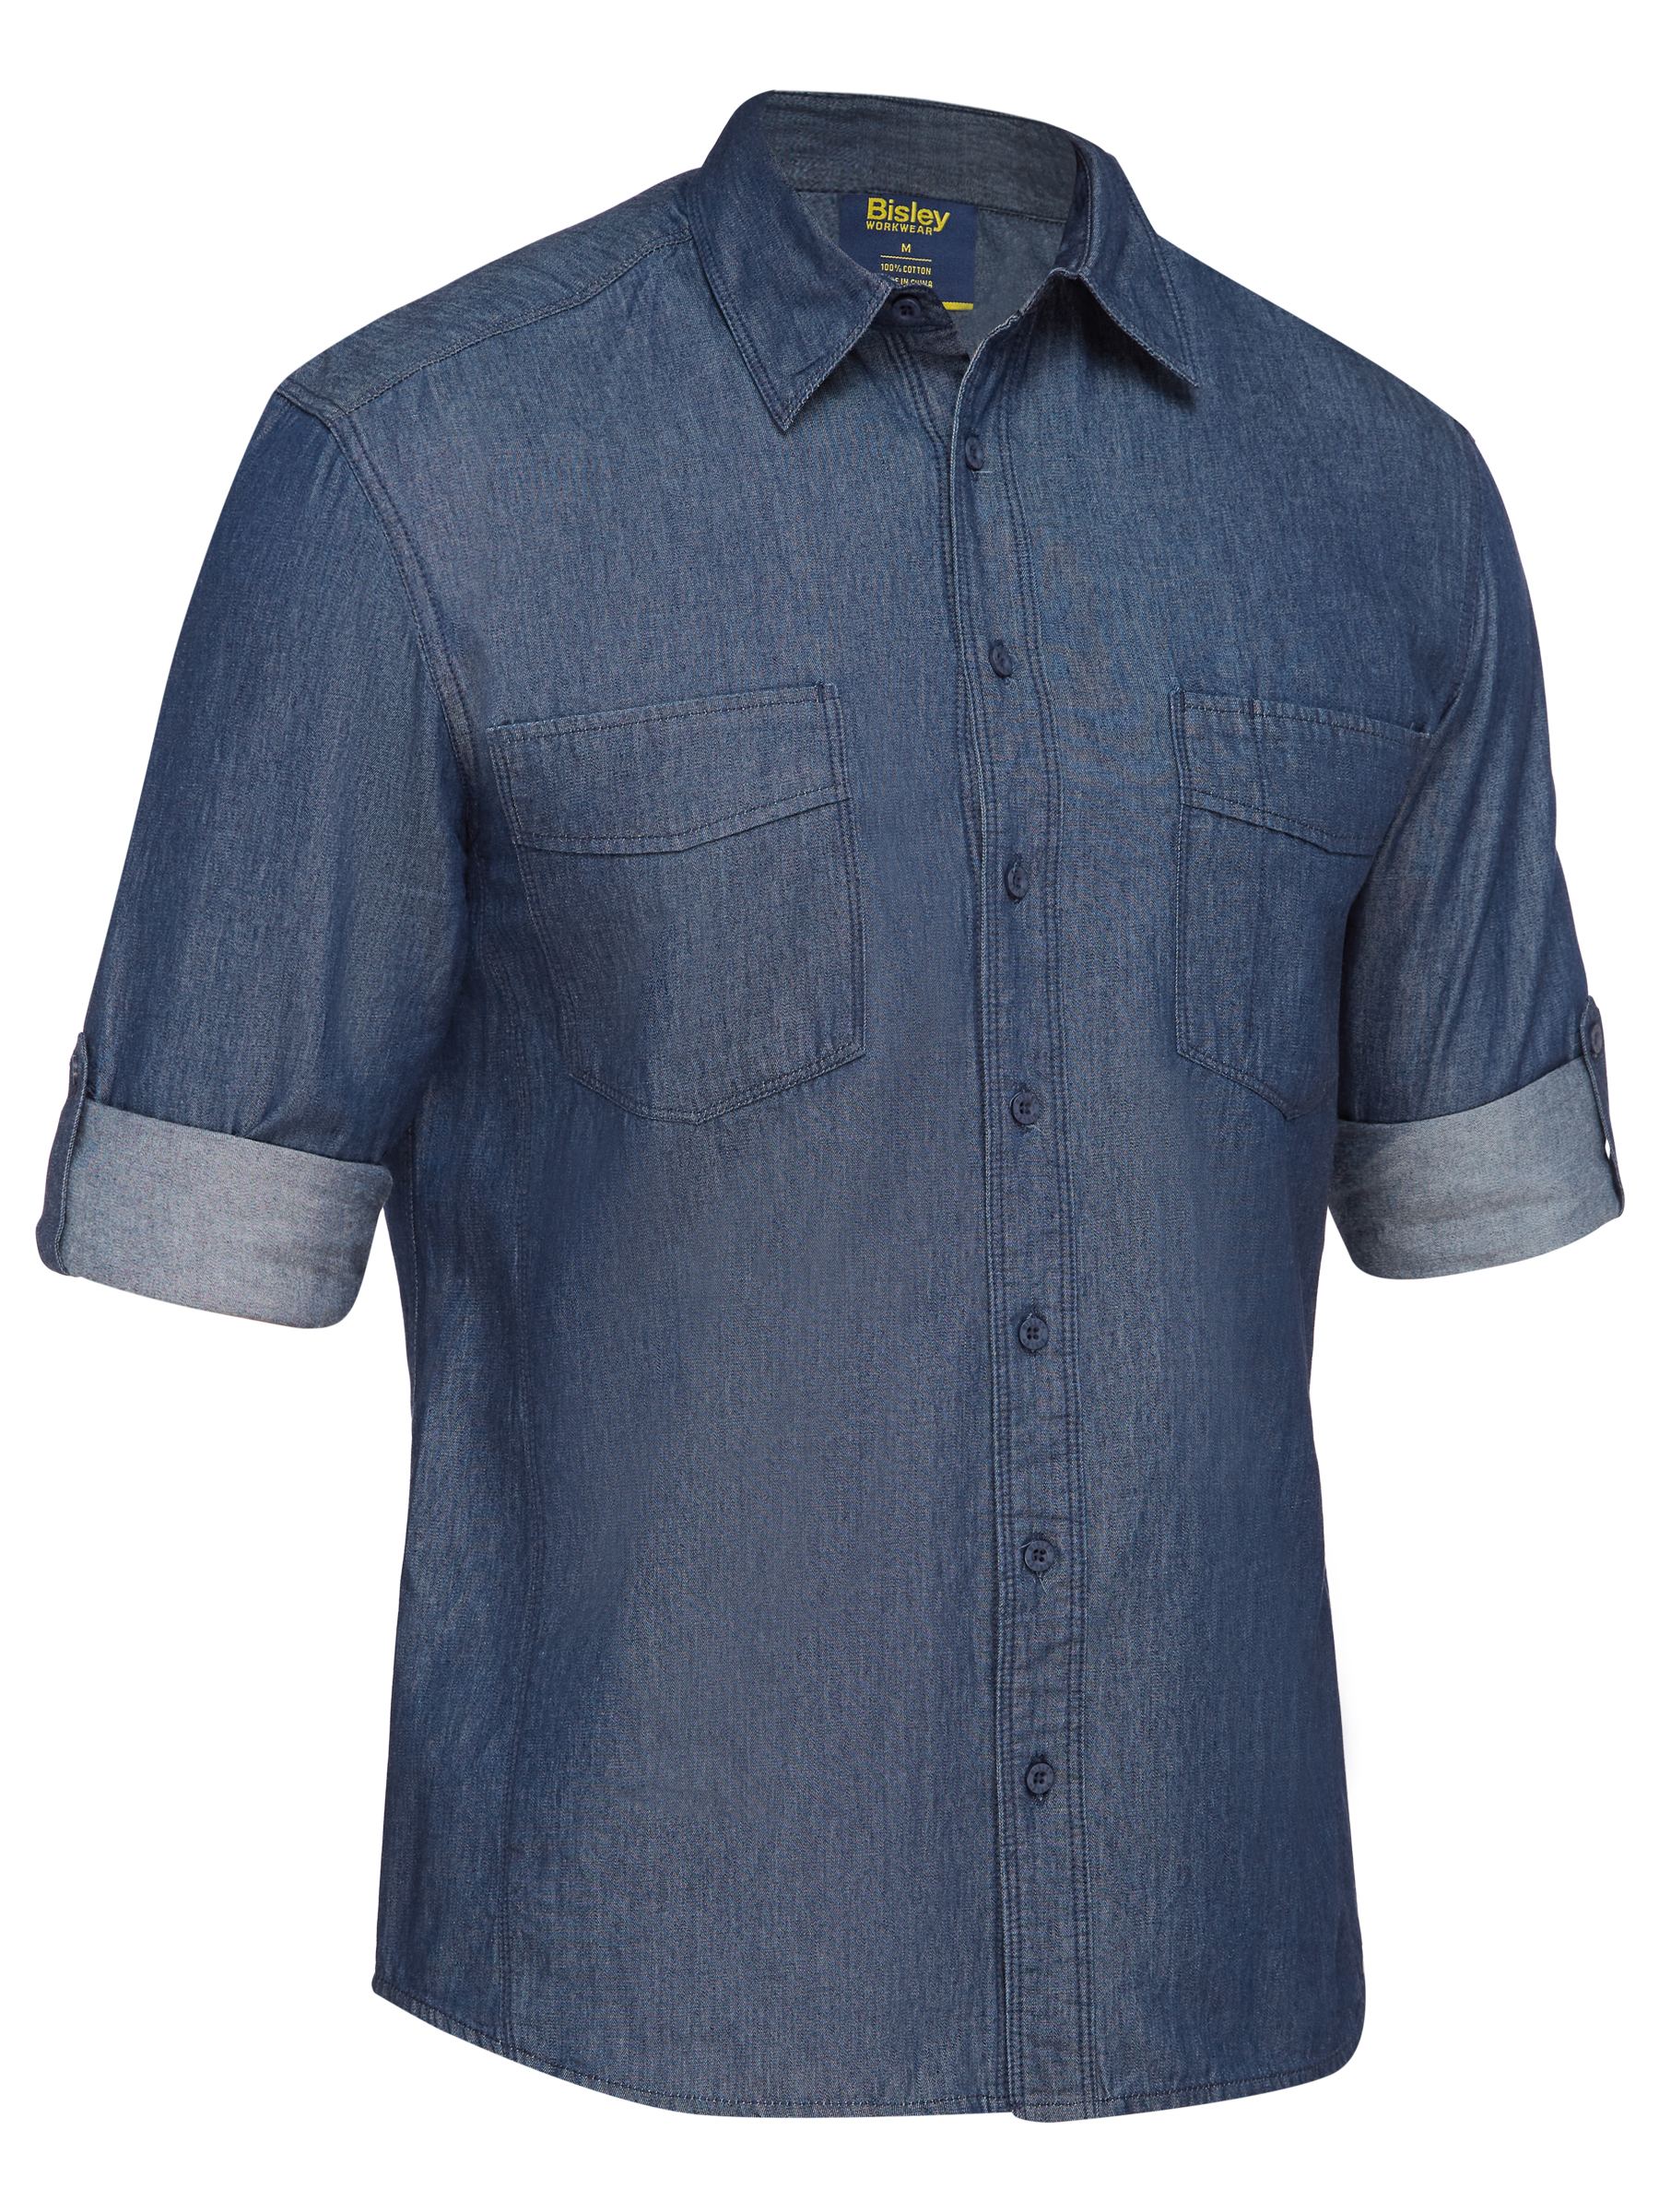 Mens long sleeve denim work shirt - BS6602 - Bisley Workwear